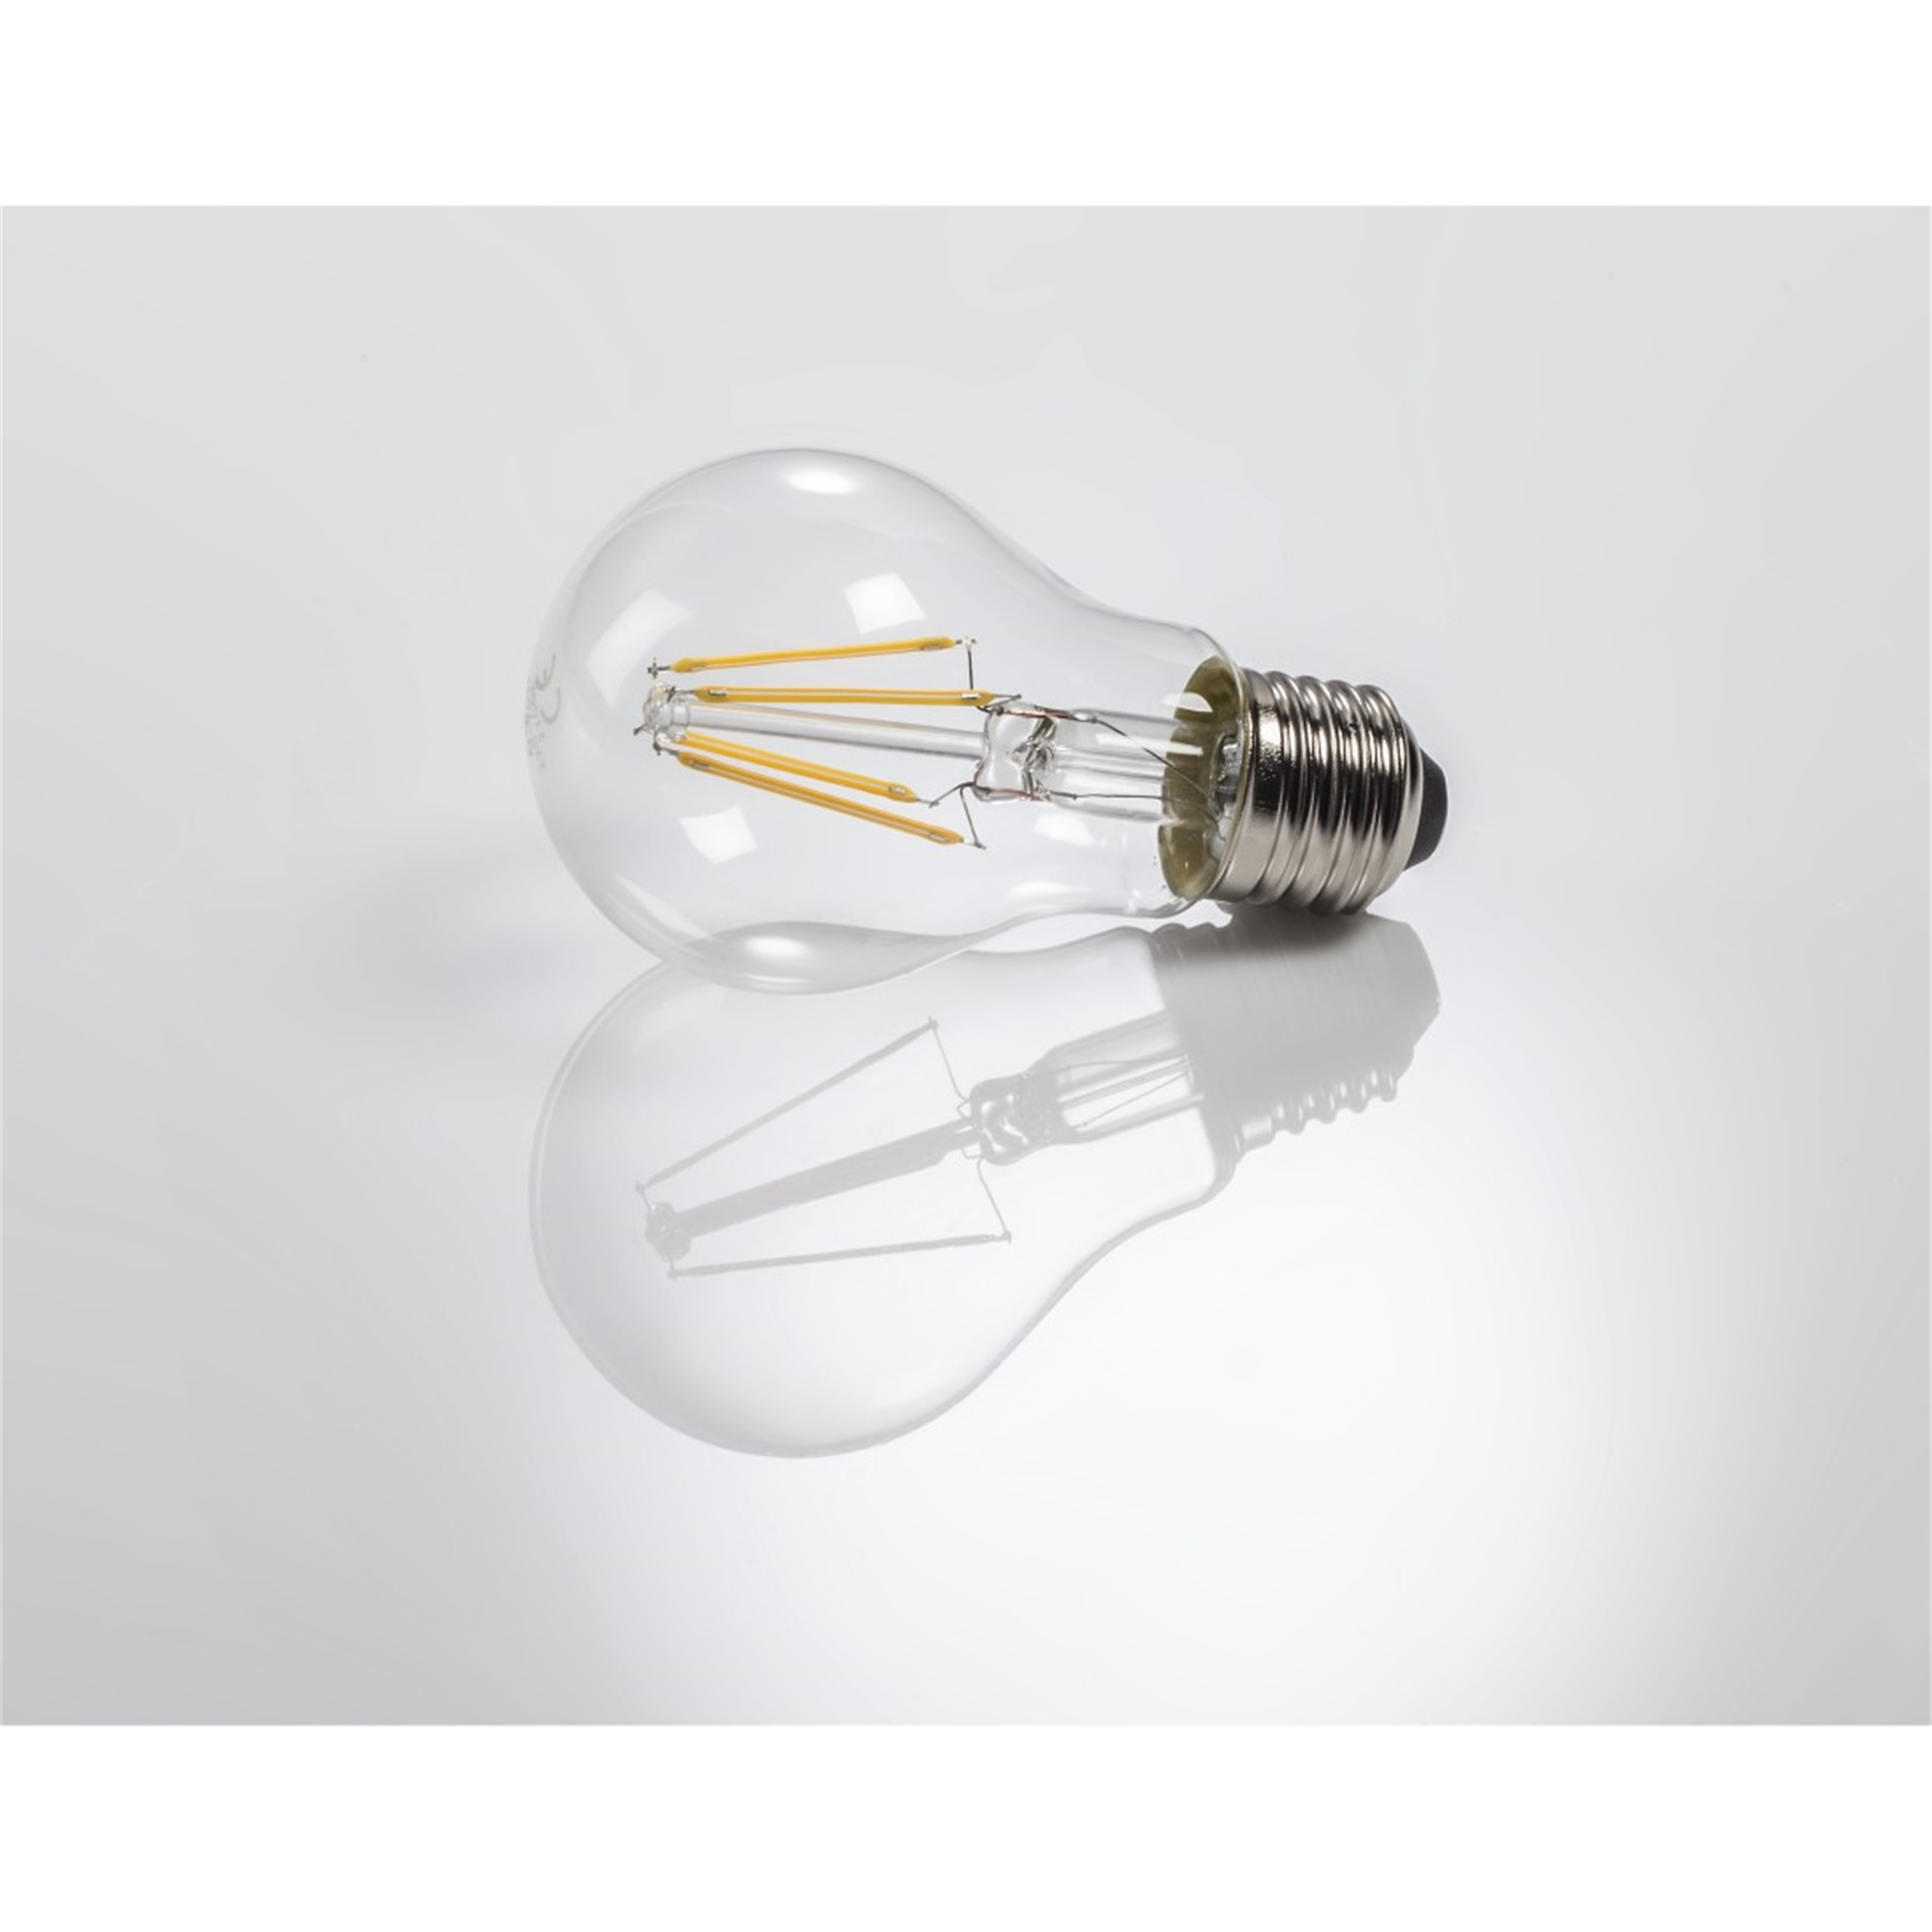 E27 XAVAX E27, Warmweiß LED-Lampe 806lm ersetzt 60W